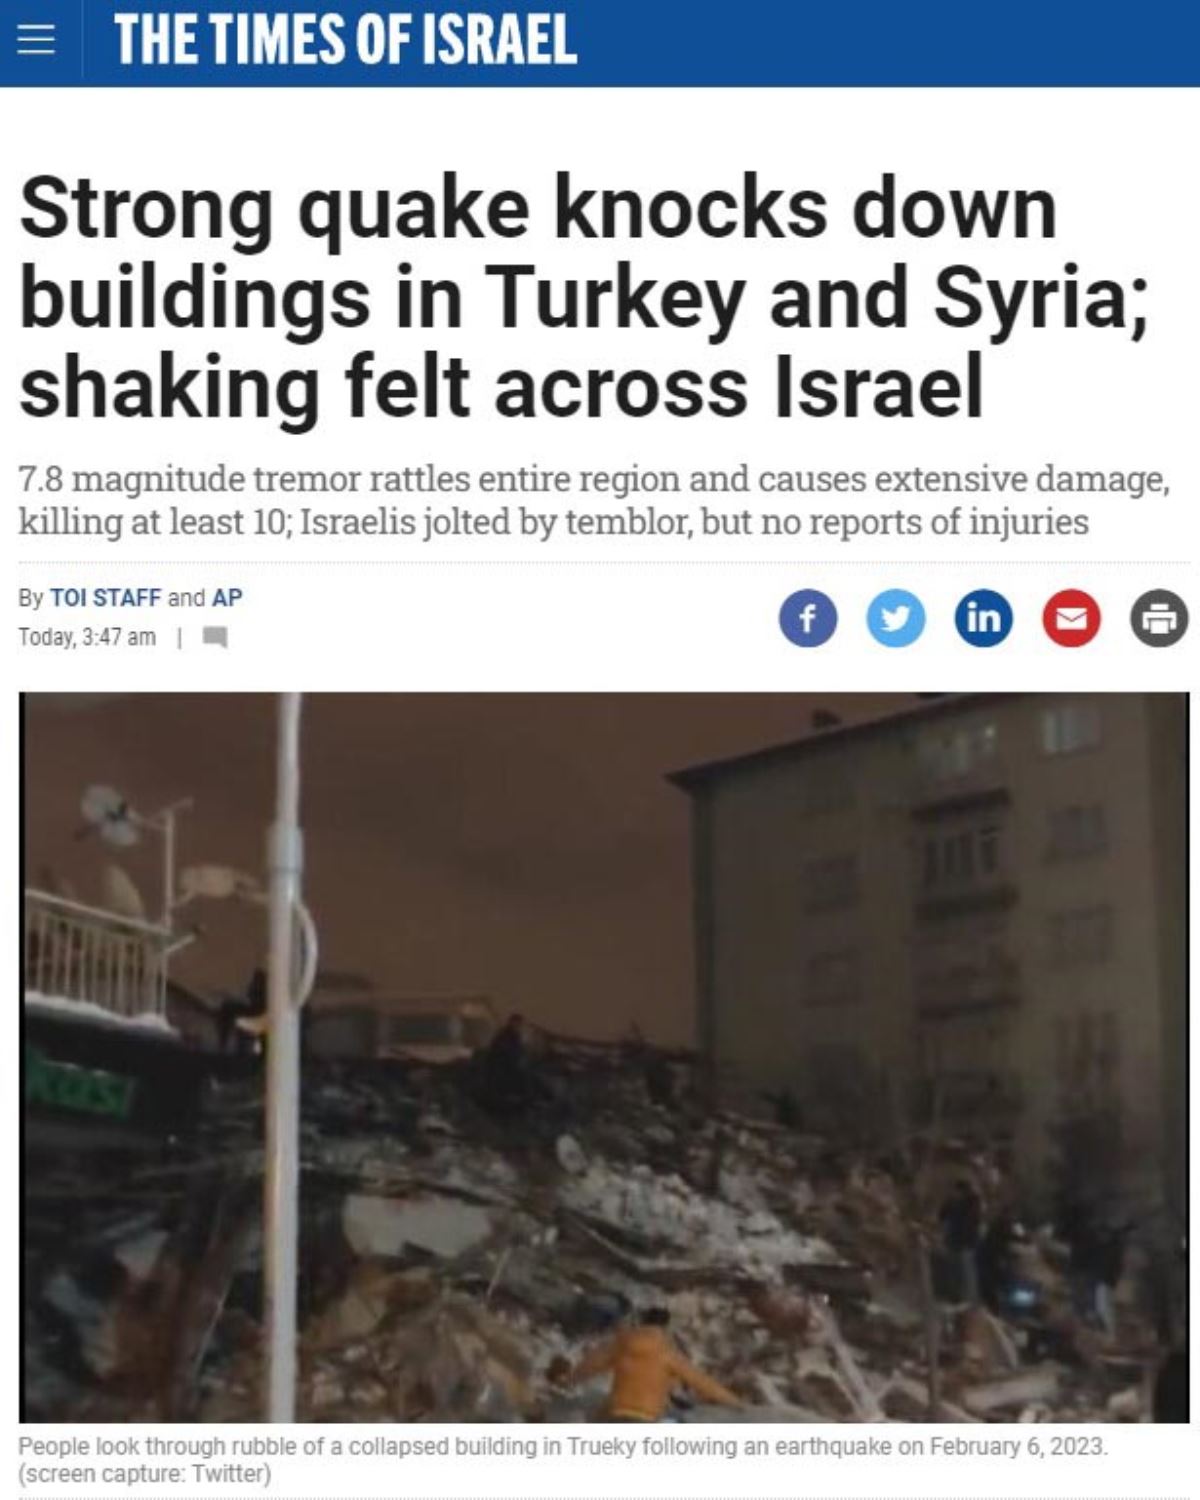 <br><p>İsrail basını, 7,8 büyüklüğündeki sarsıntının tüm bölgeyi sarstığını, büyük hasara yol açarak en az 100 kişinin canına mal olduğunu, İsrail'in de depremle sarsıldığını, ancak ölüm ya da yaralanma bildirilmediğini duyurdu.</p><br>